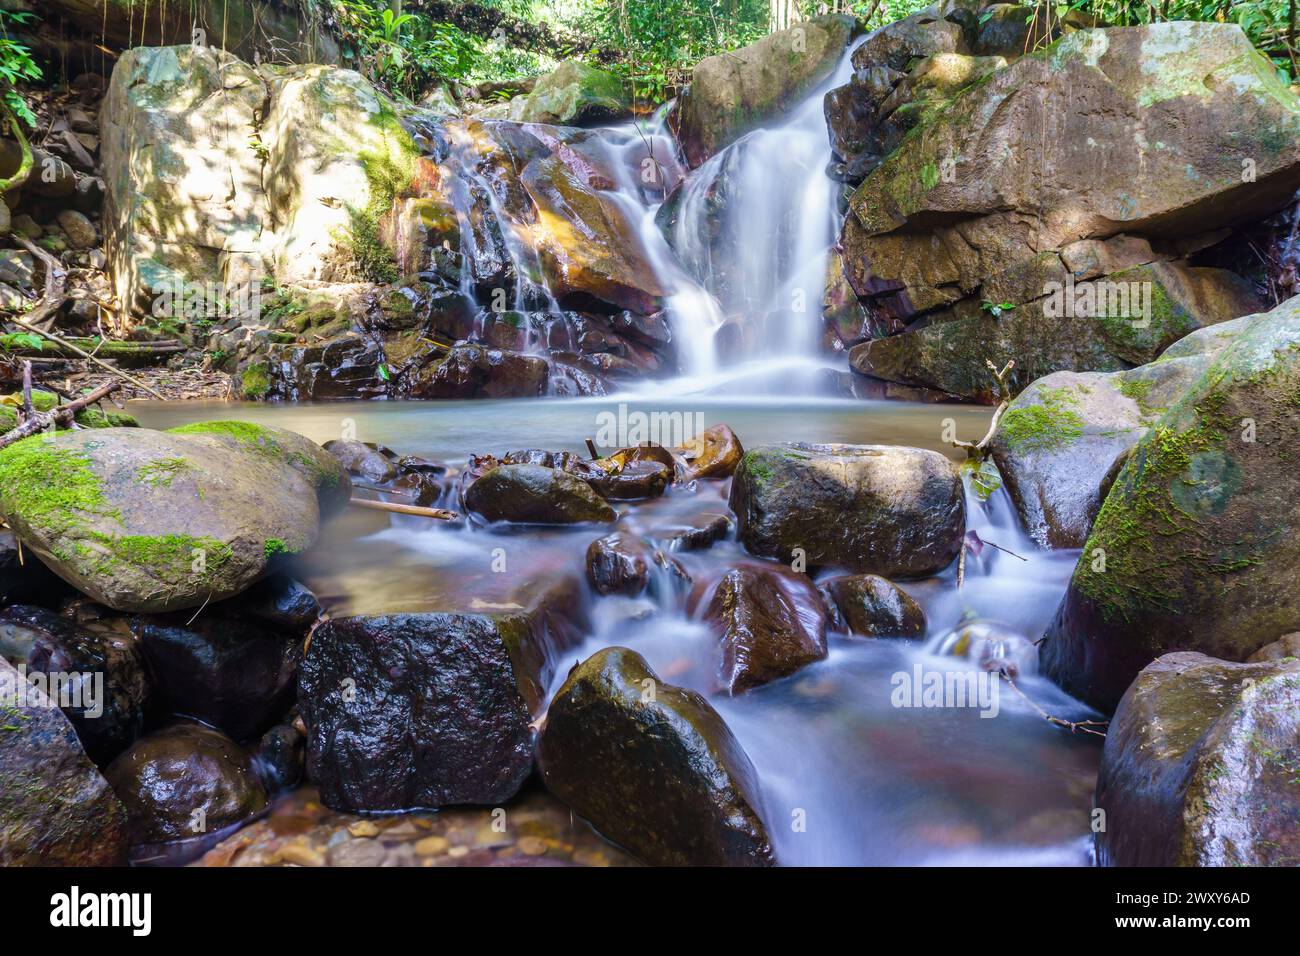 Beautiful waterfall in Borneo jungle Stock Photo